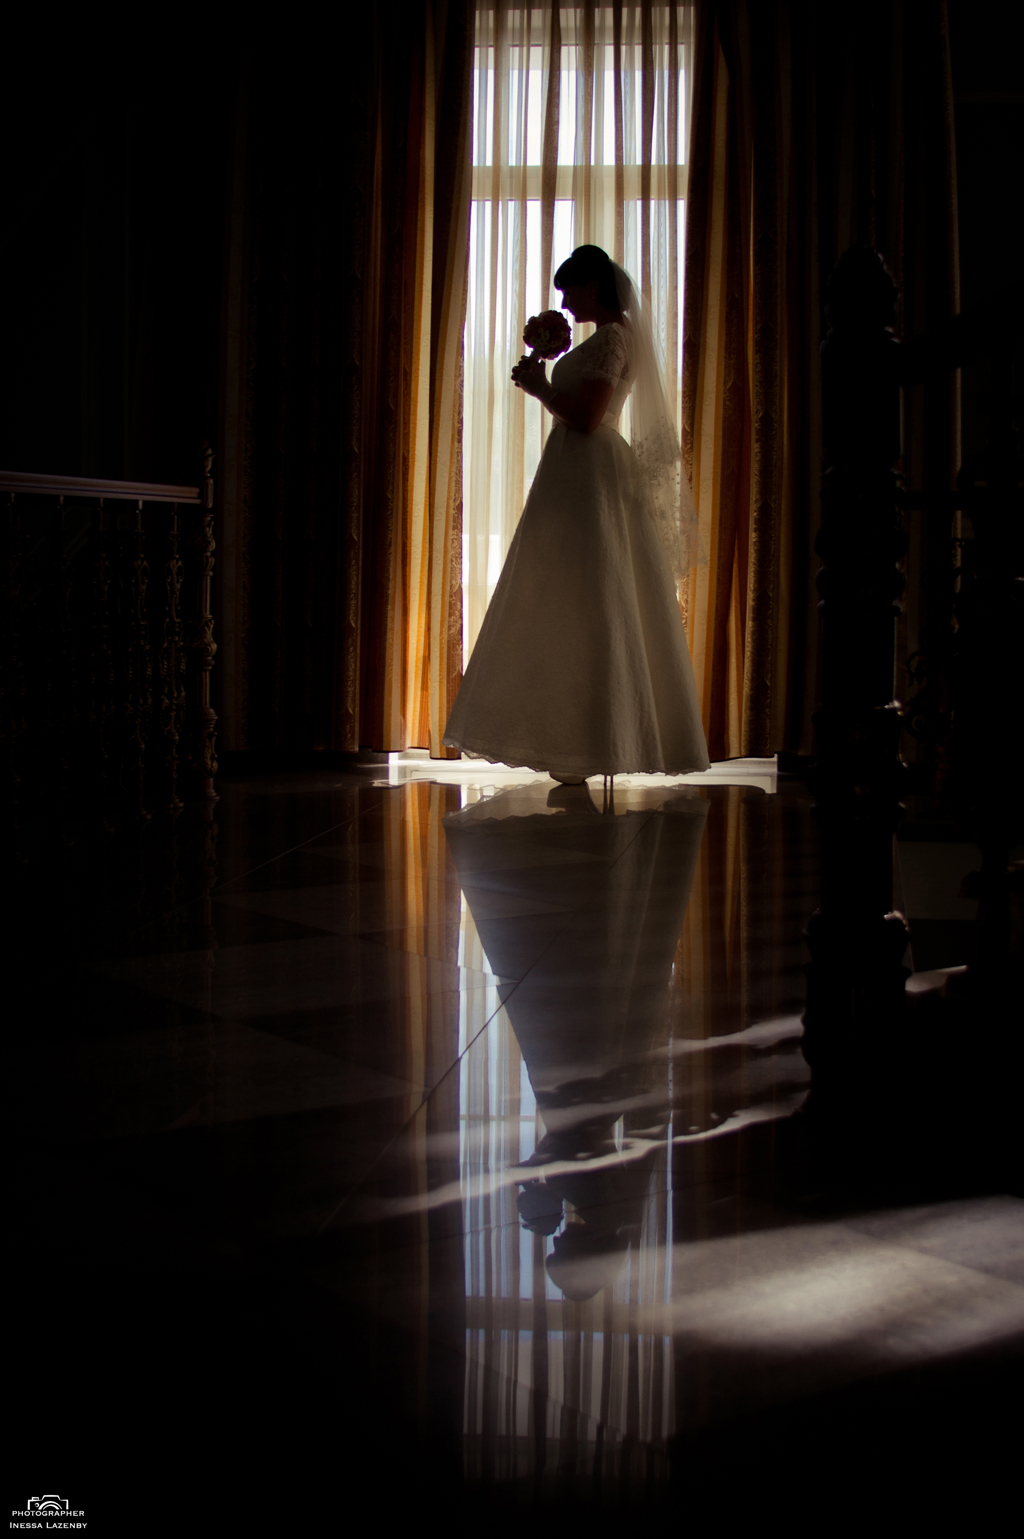 bride silhouette